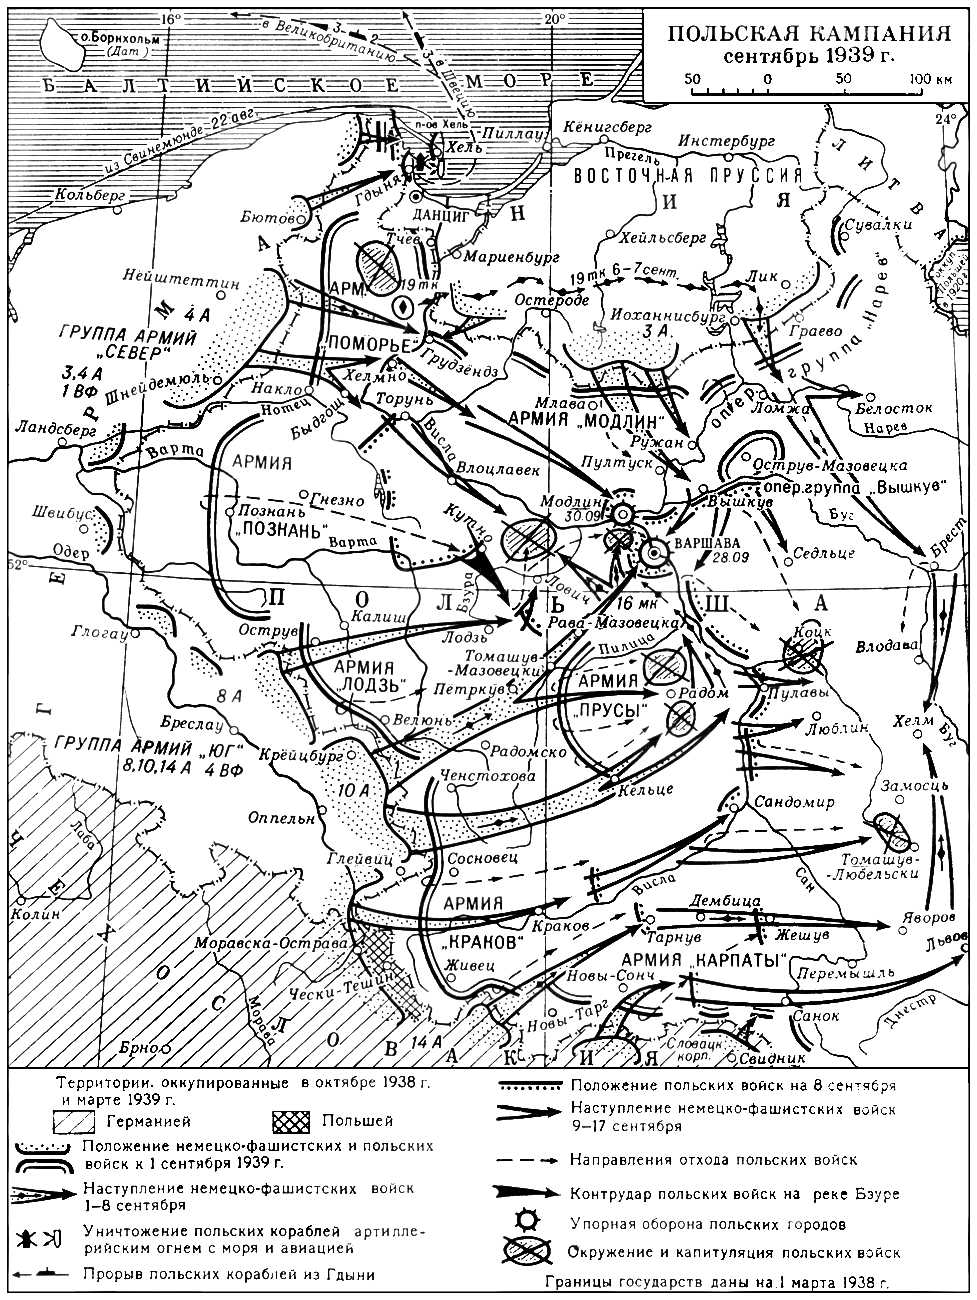 Польская кампания 1939